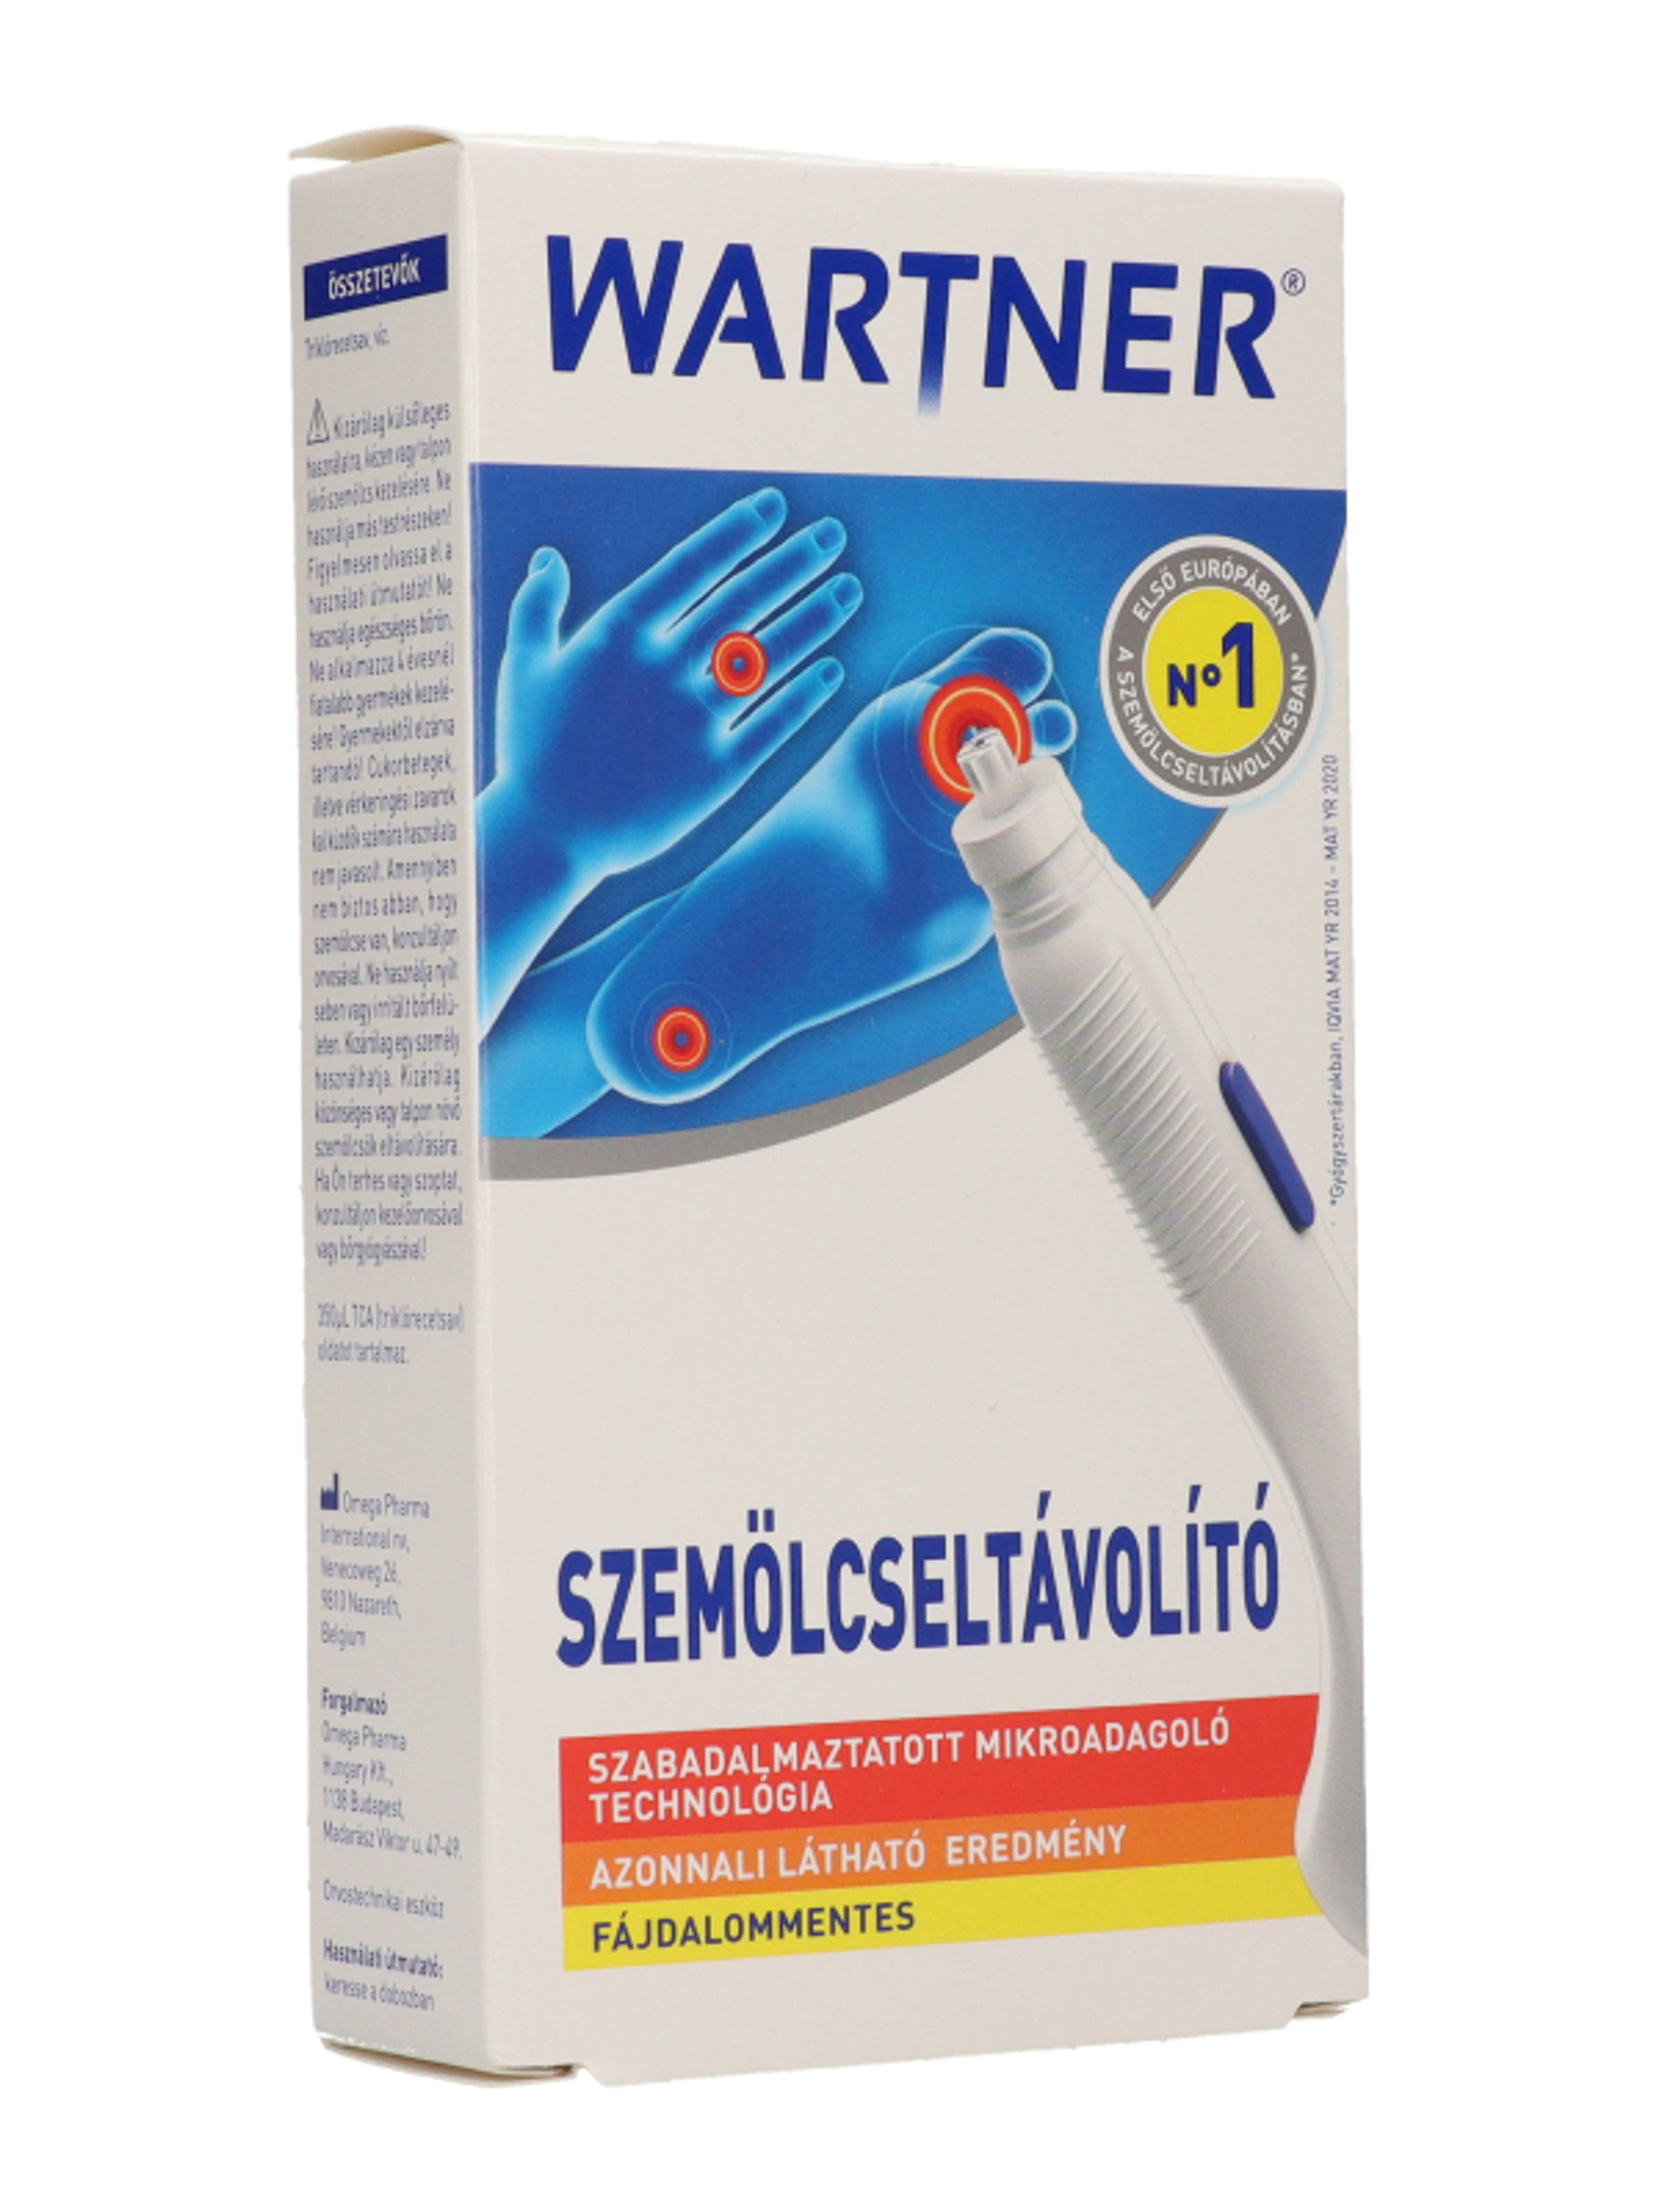 Wartner szemölcseltávolító stift 2.0 - 1,5 ml-5